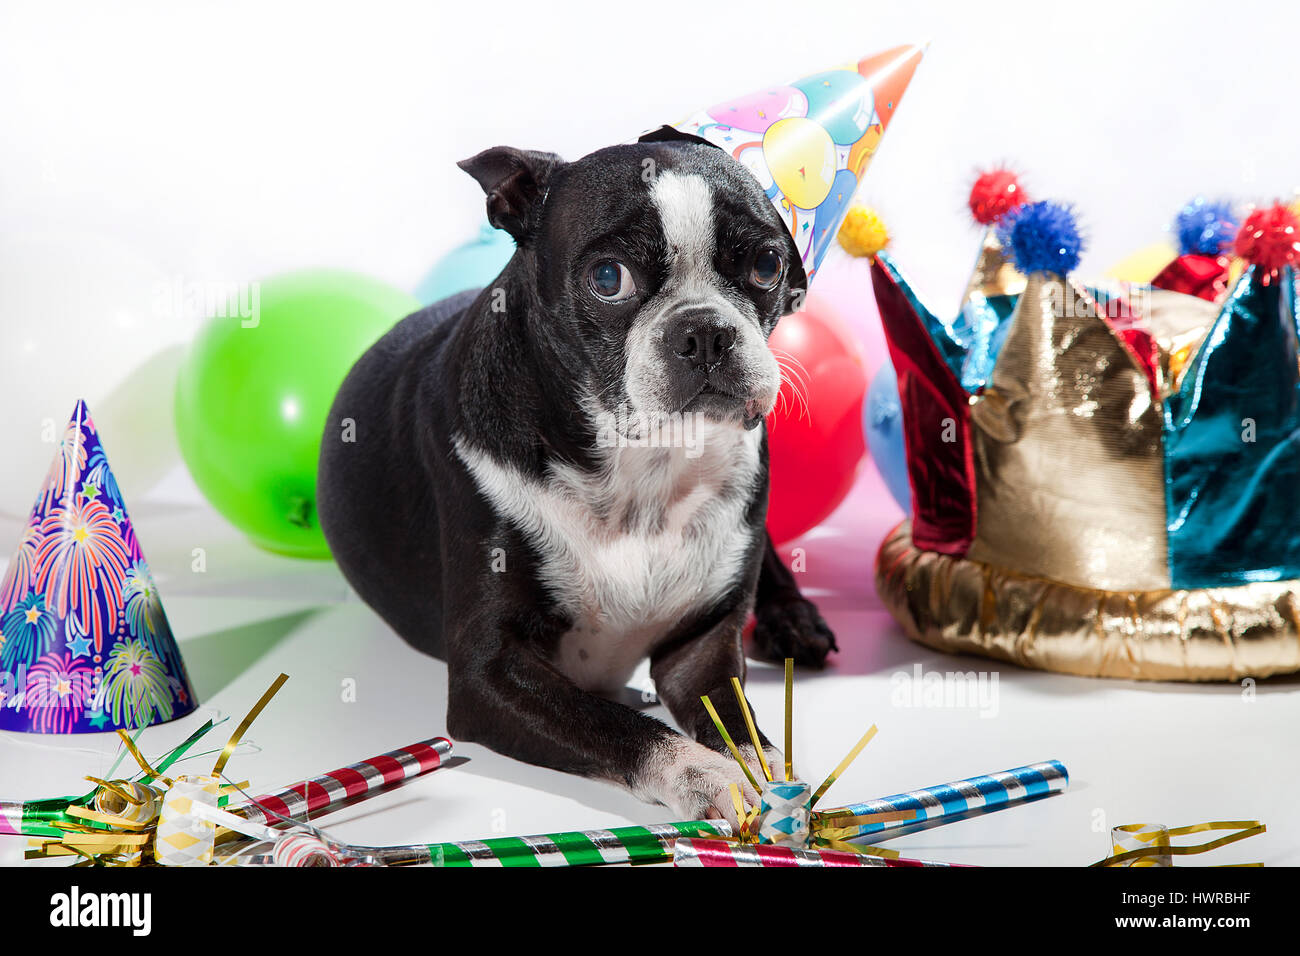 Traurig Boston Terrier auf ihrer Geburtstagsparty. Bunte Luftballons, Hüte, Flöten, isoliert auf weiss. Schmollend Hund vor der Kamera. Geburtstagskind. Stockfoto